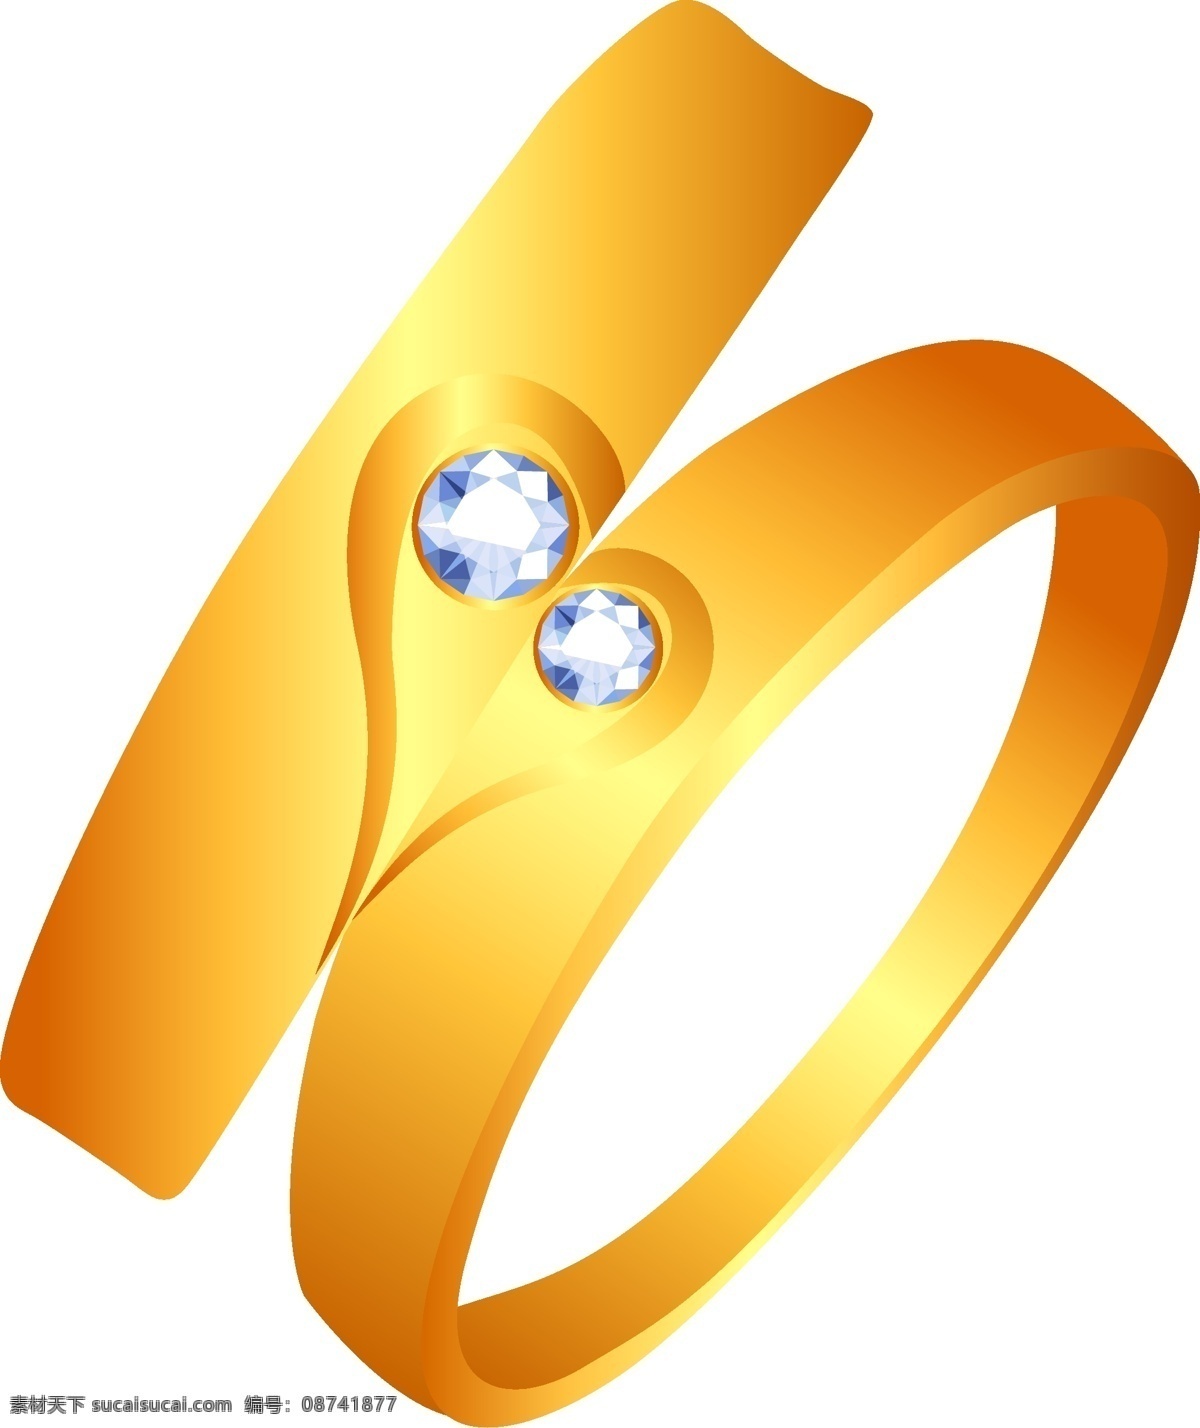 矢量 手绘 黄金 戒指 奢华 彩钻 宝石 钻石图标图案 婚礼 珠宝首饰 钻石 永恒 爱情 无价 宝物 钻石的 钻石广告 奢侈